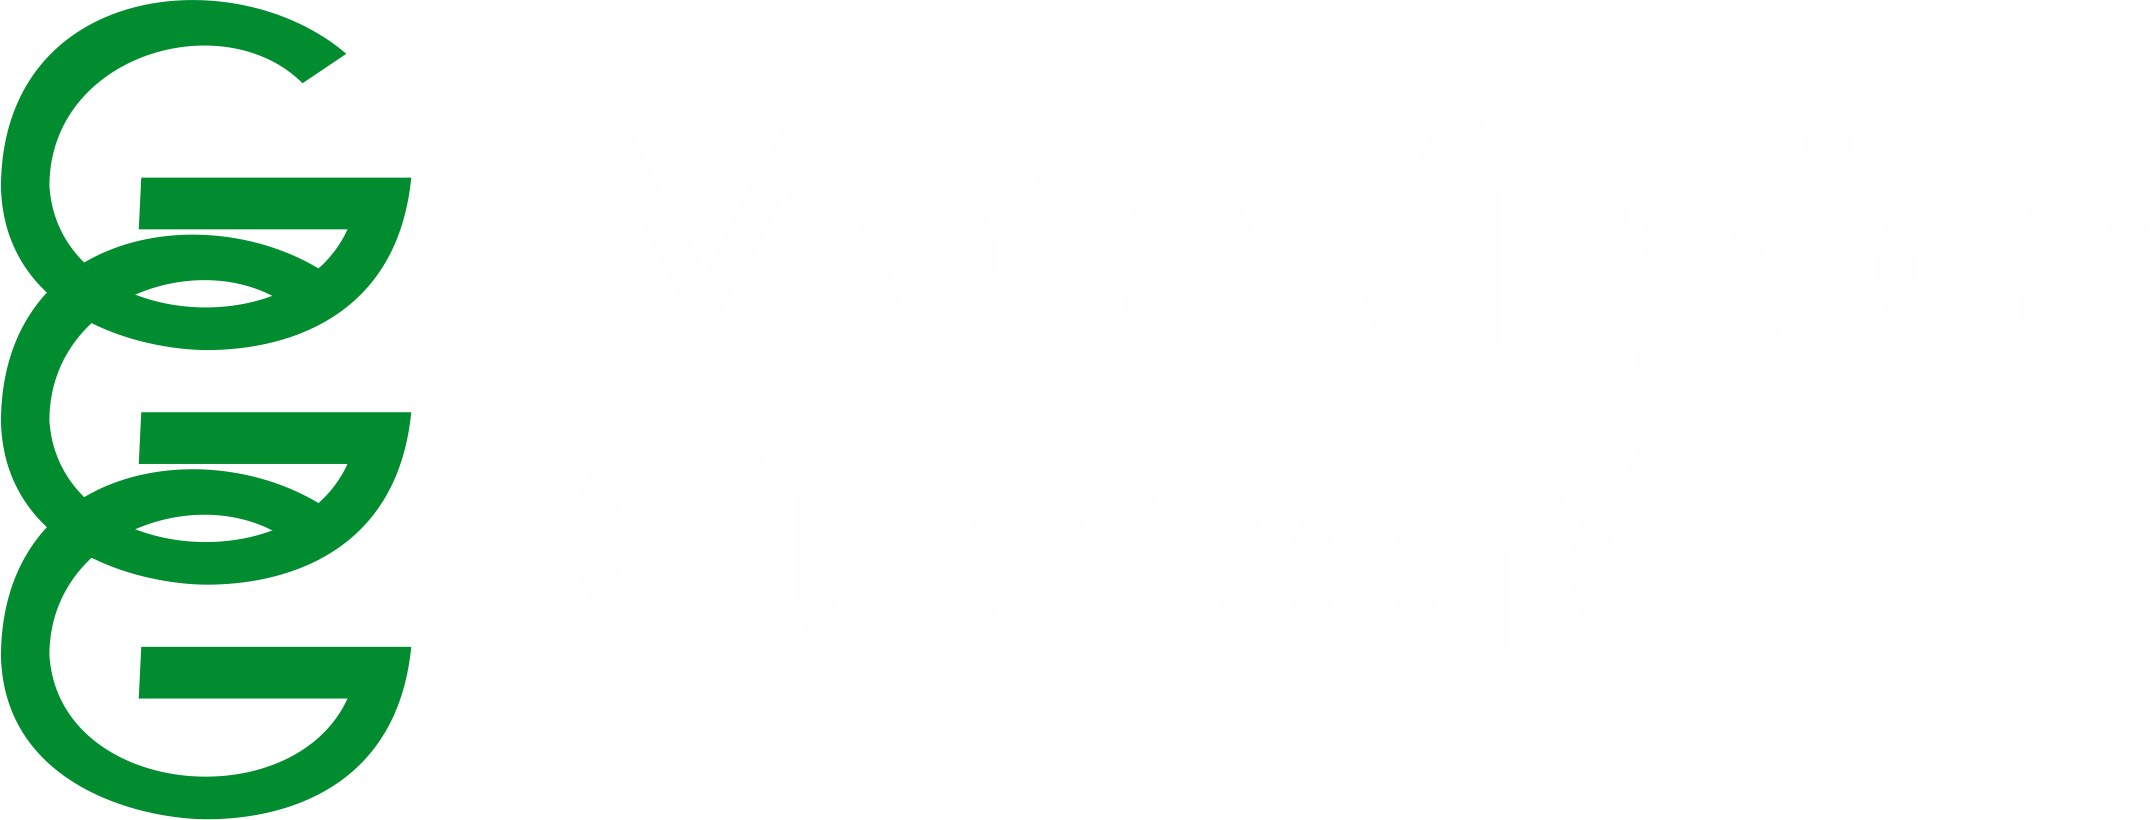 Metalúrgica Guaporé